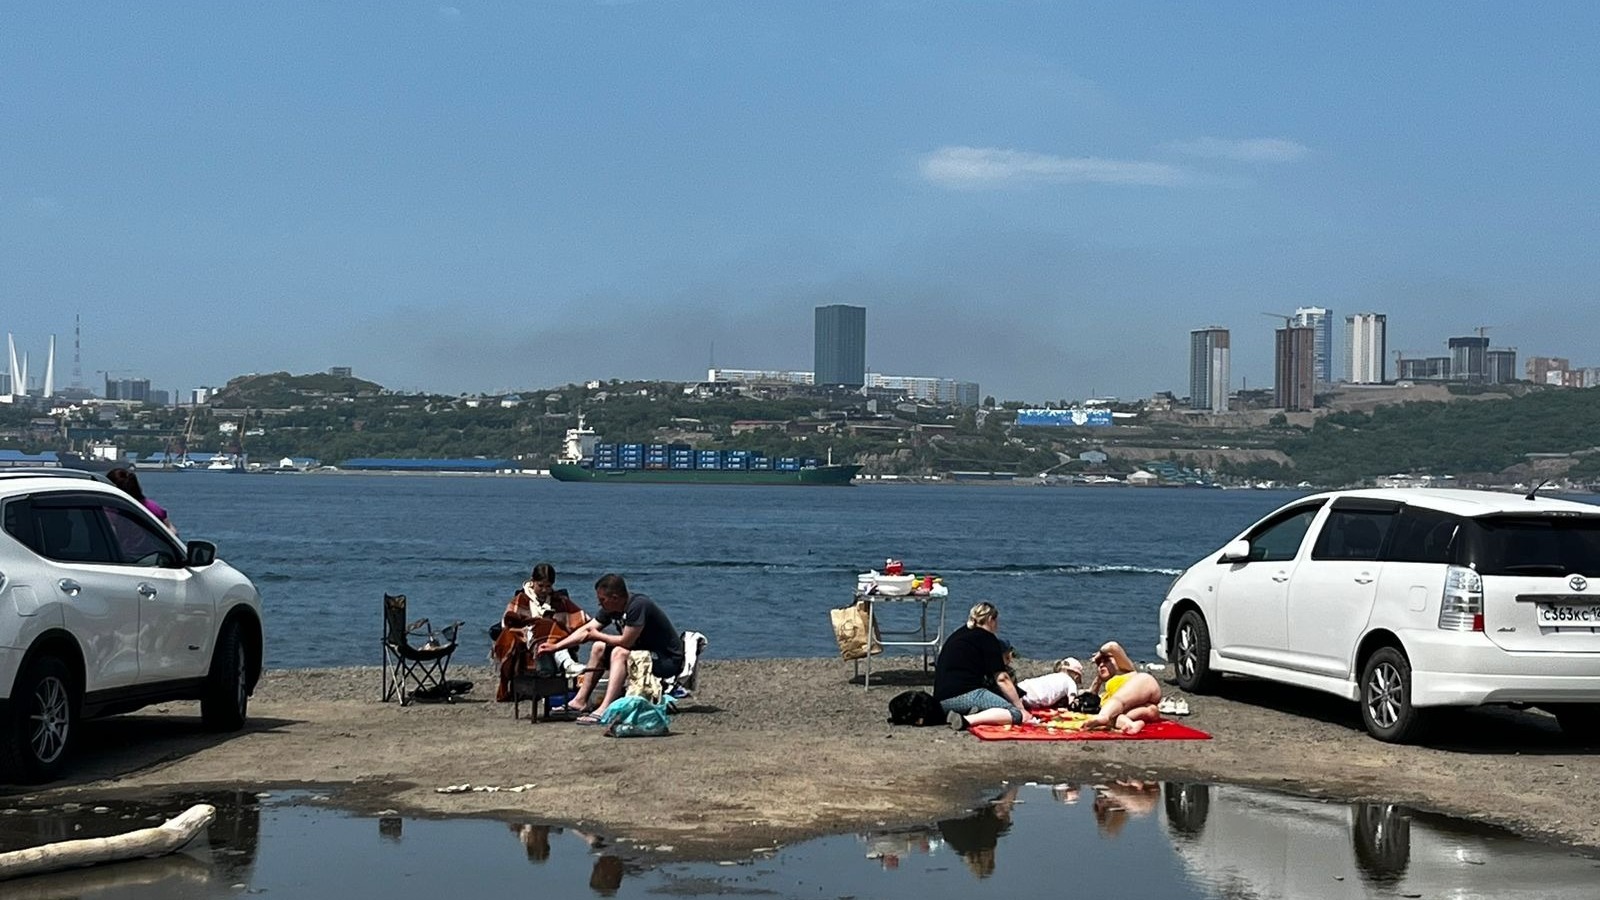 Охота пуще неволи: люди открыли «пляжный сезон» во Владивостоке